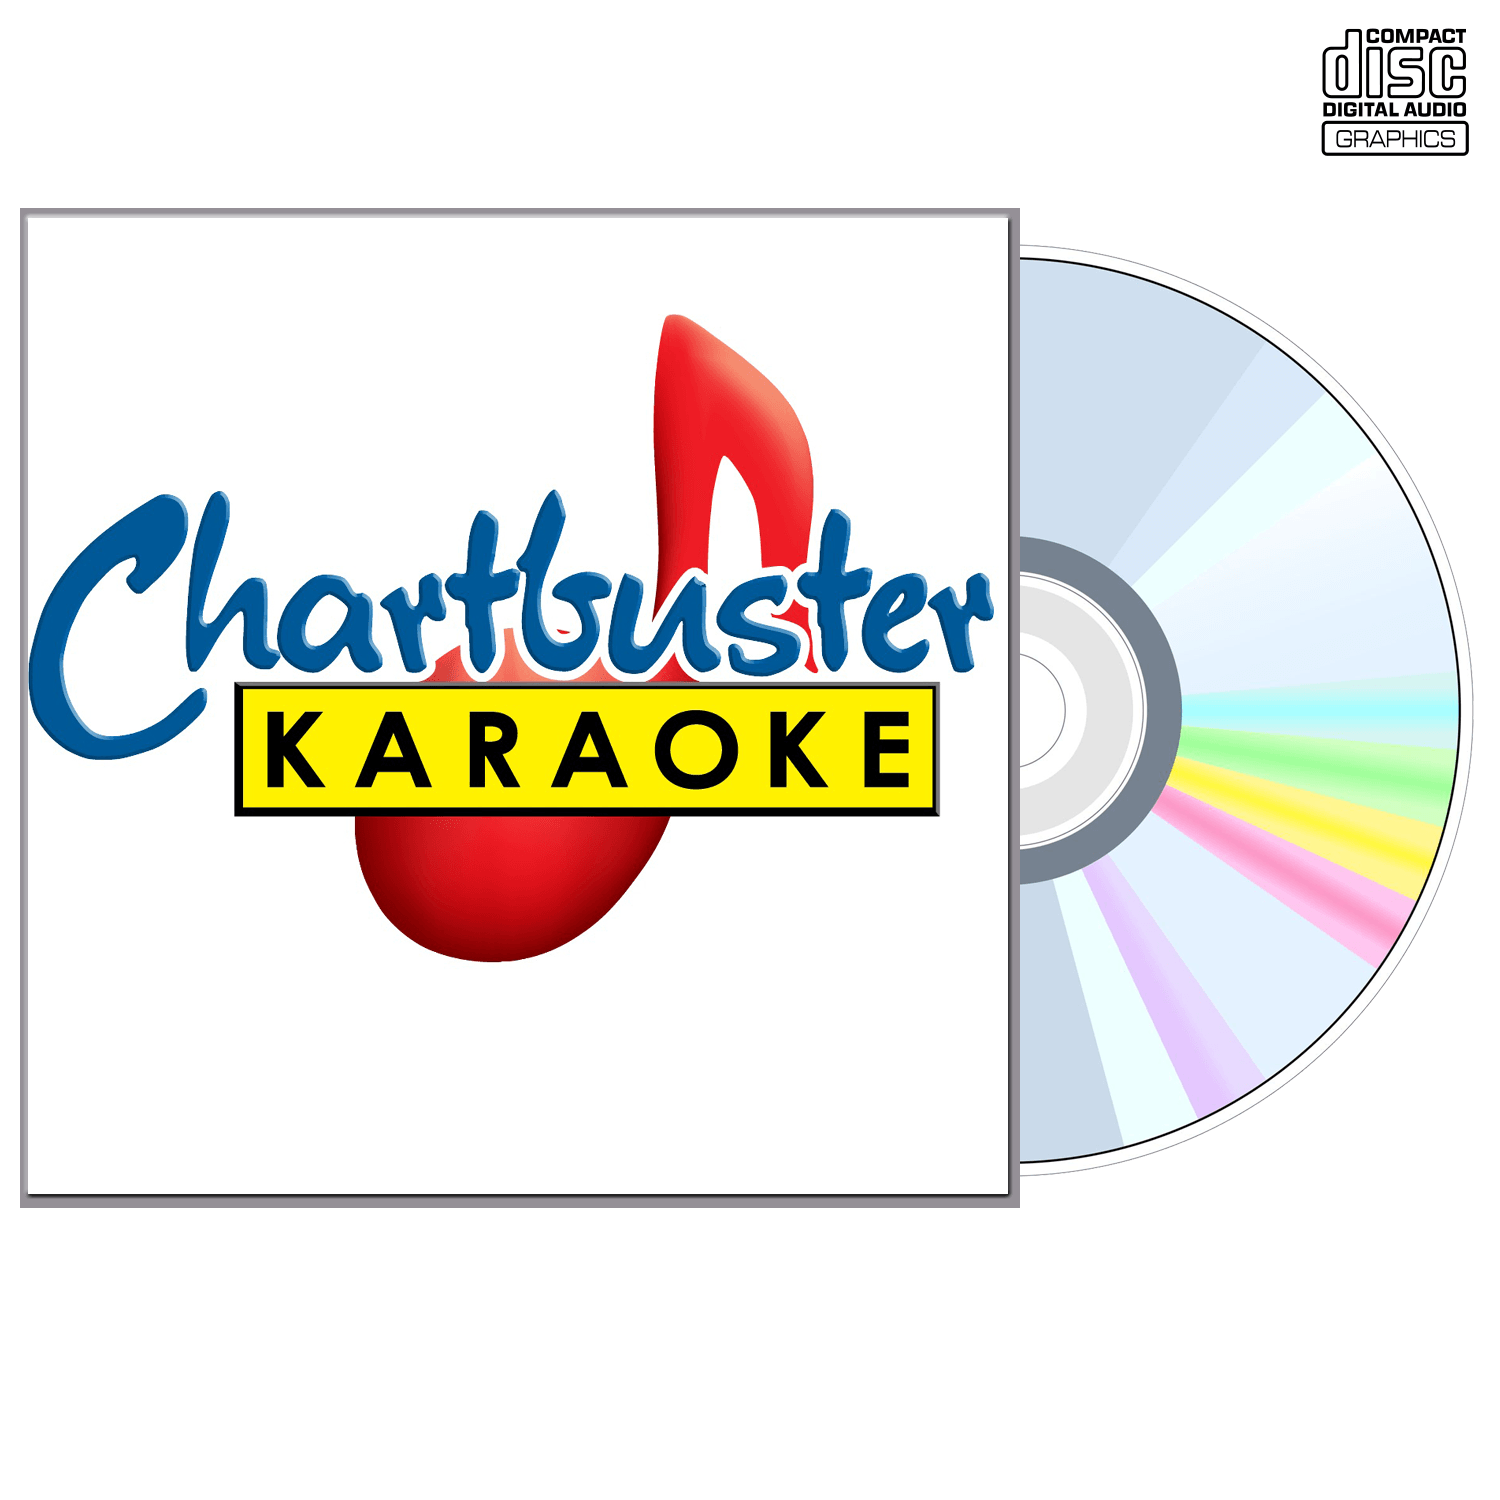 Heart - CD+G - Chartbuster Karaoke - Karaoke Home Entertainment